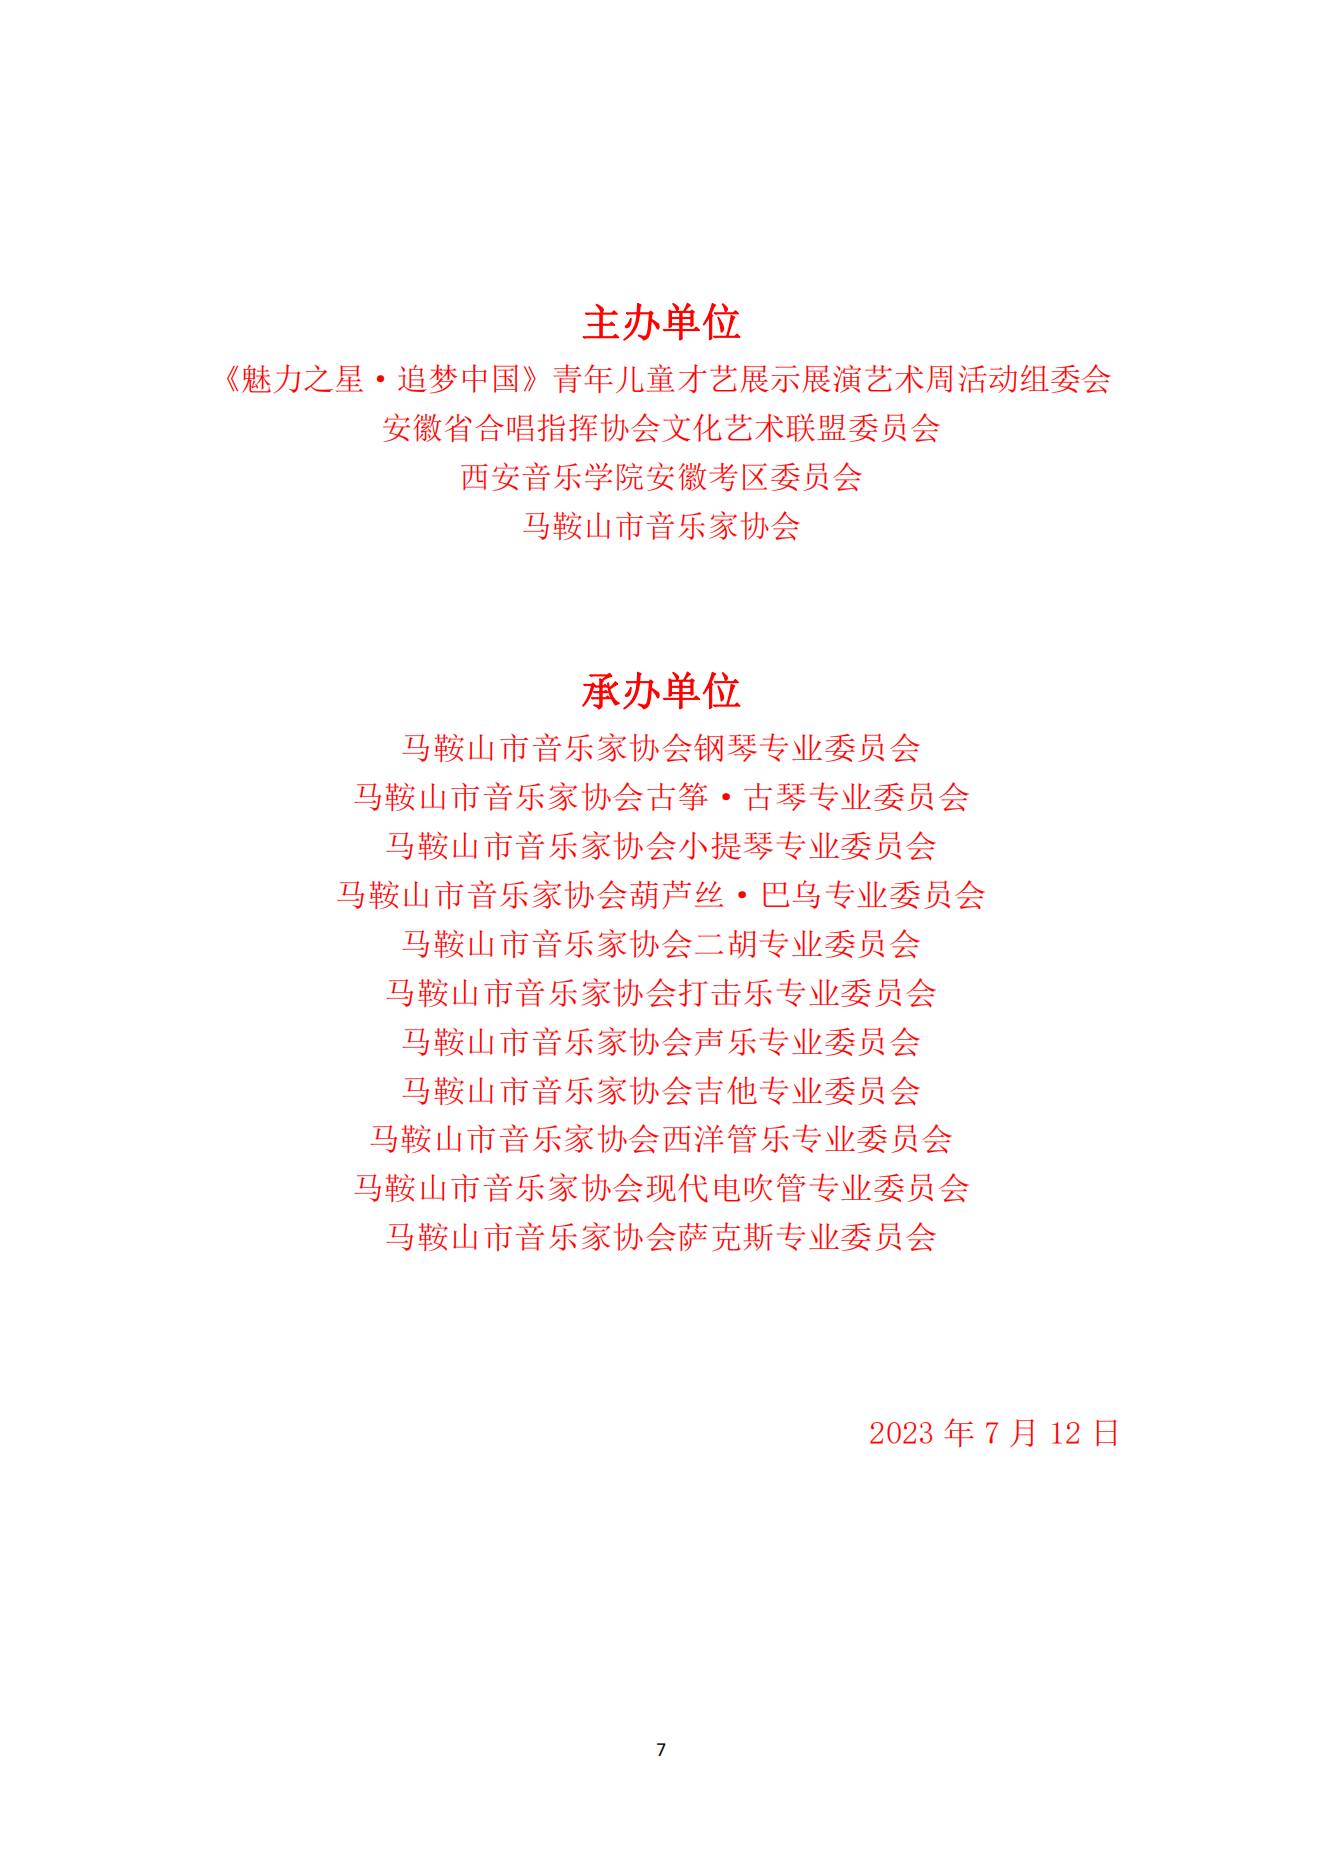 2023魅力之星·追梦中国青少年儿童才艺展示展演艺术周活动通知 (2)_06.png